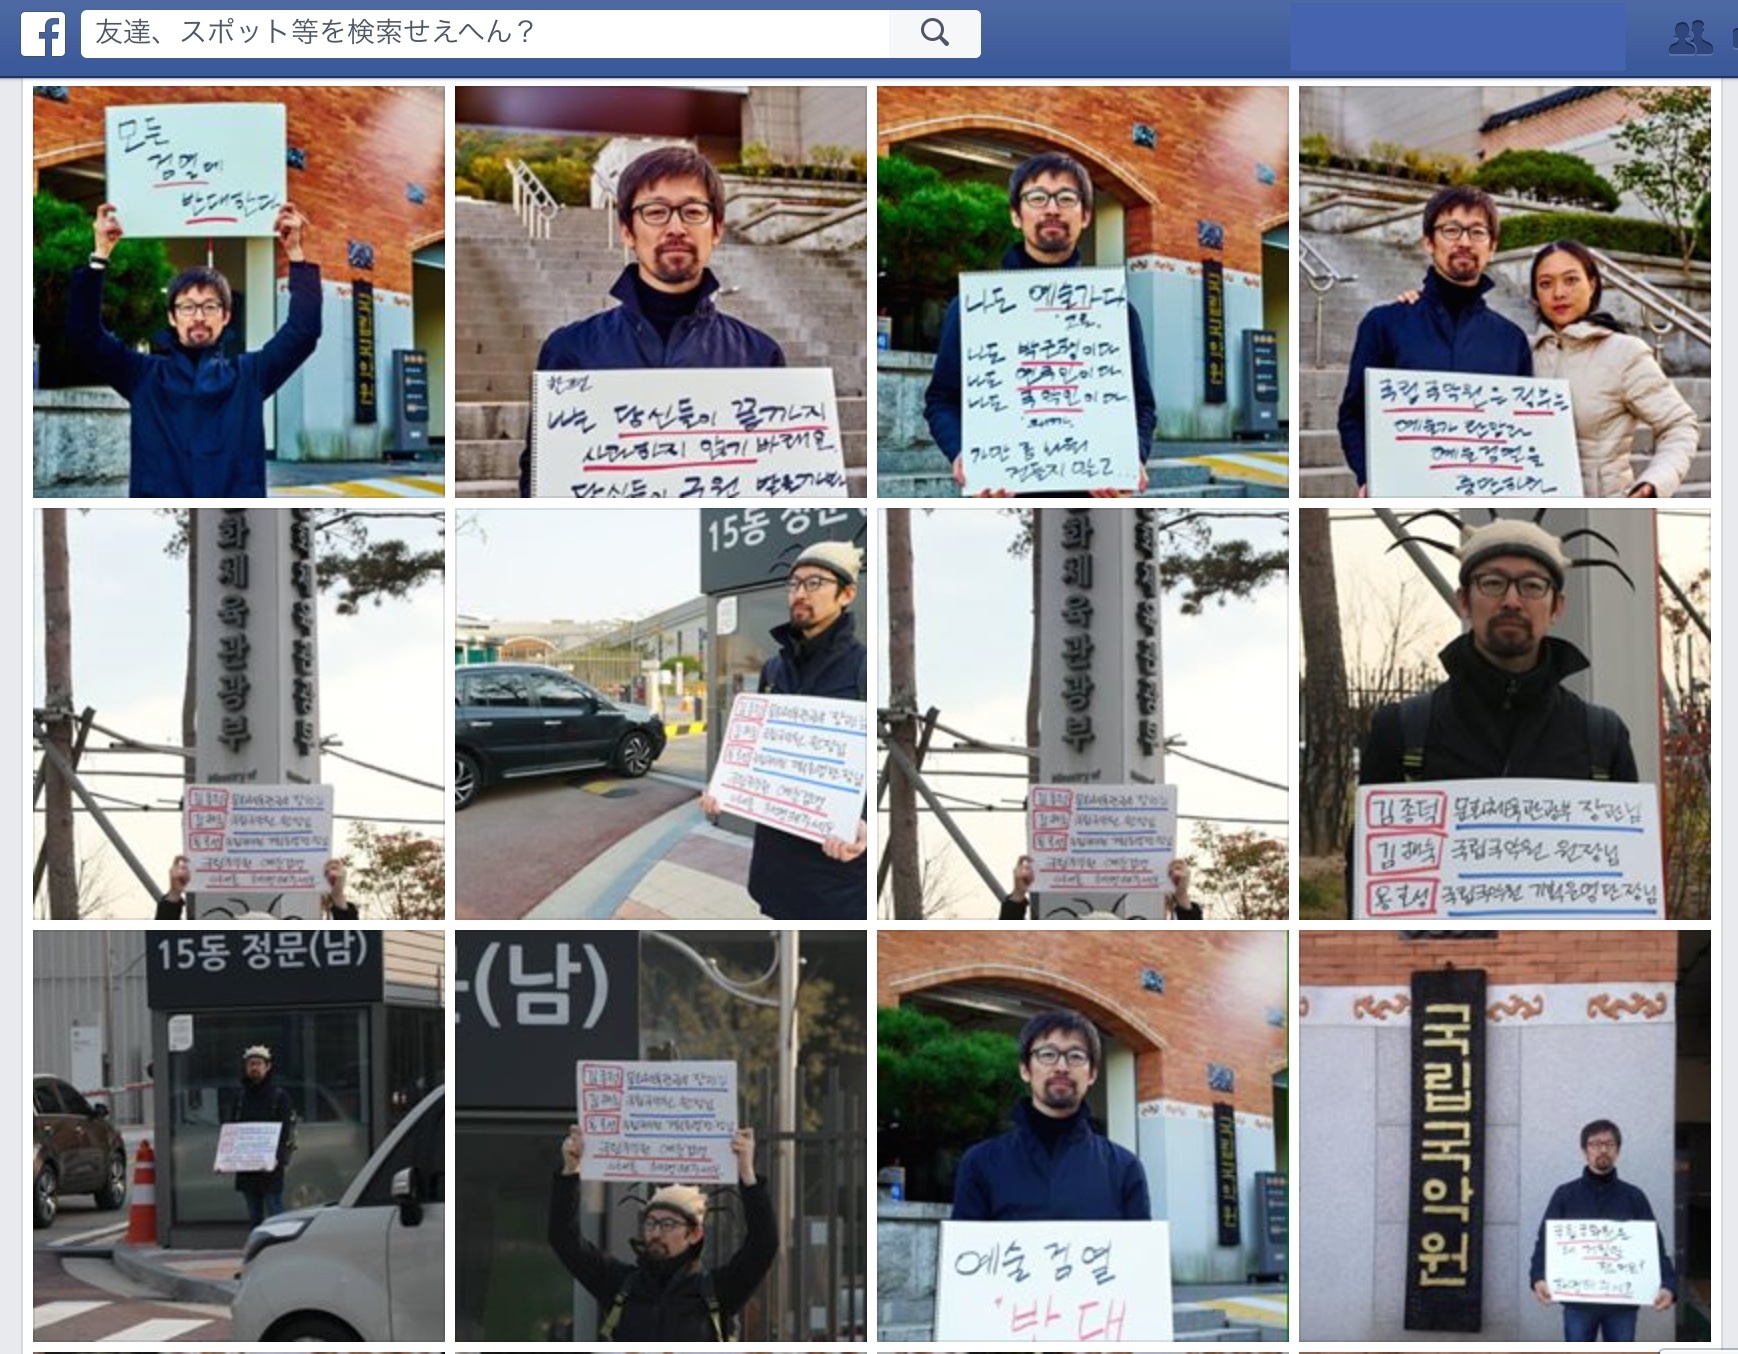 チョン・ヨンドゥ氏のFacebookページより、韓国国立伝統音楽院(国立国楽院)前でのデモ(スタンディング)